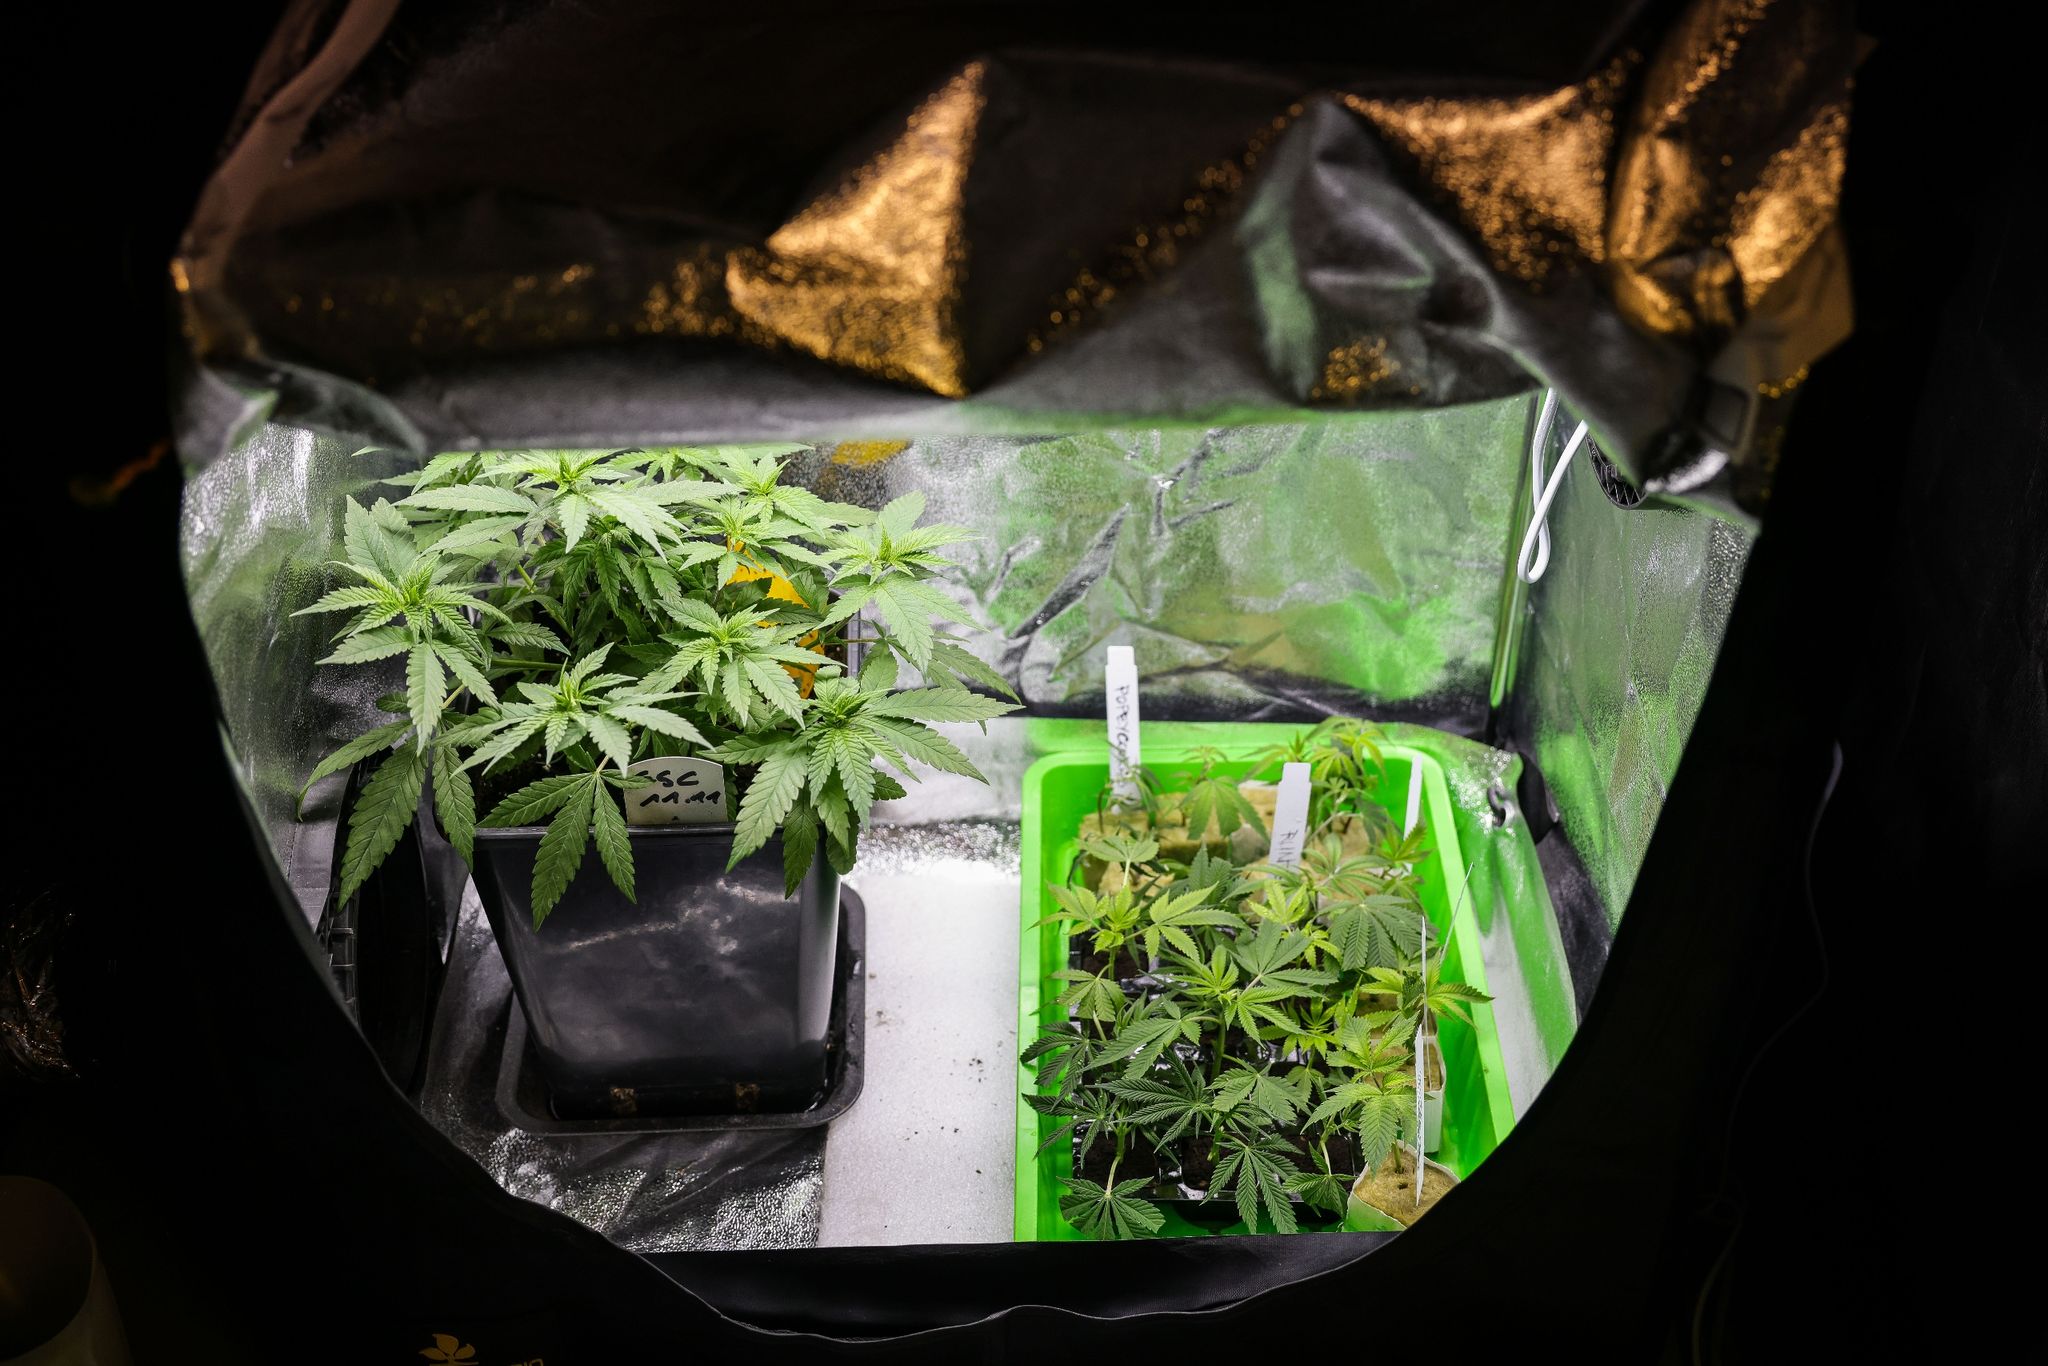 mehr als 20 kilo cannabis-pflanzen in abfallsäcken entdeckt